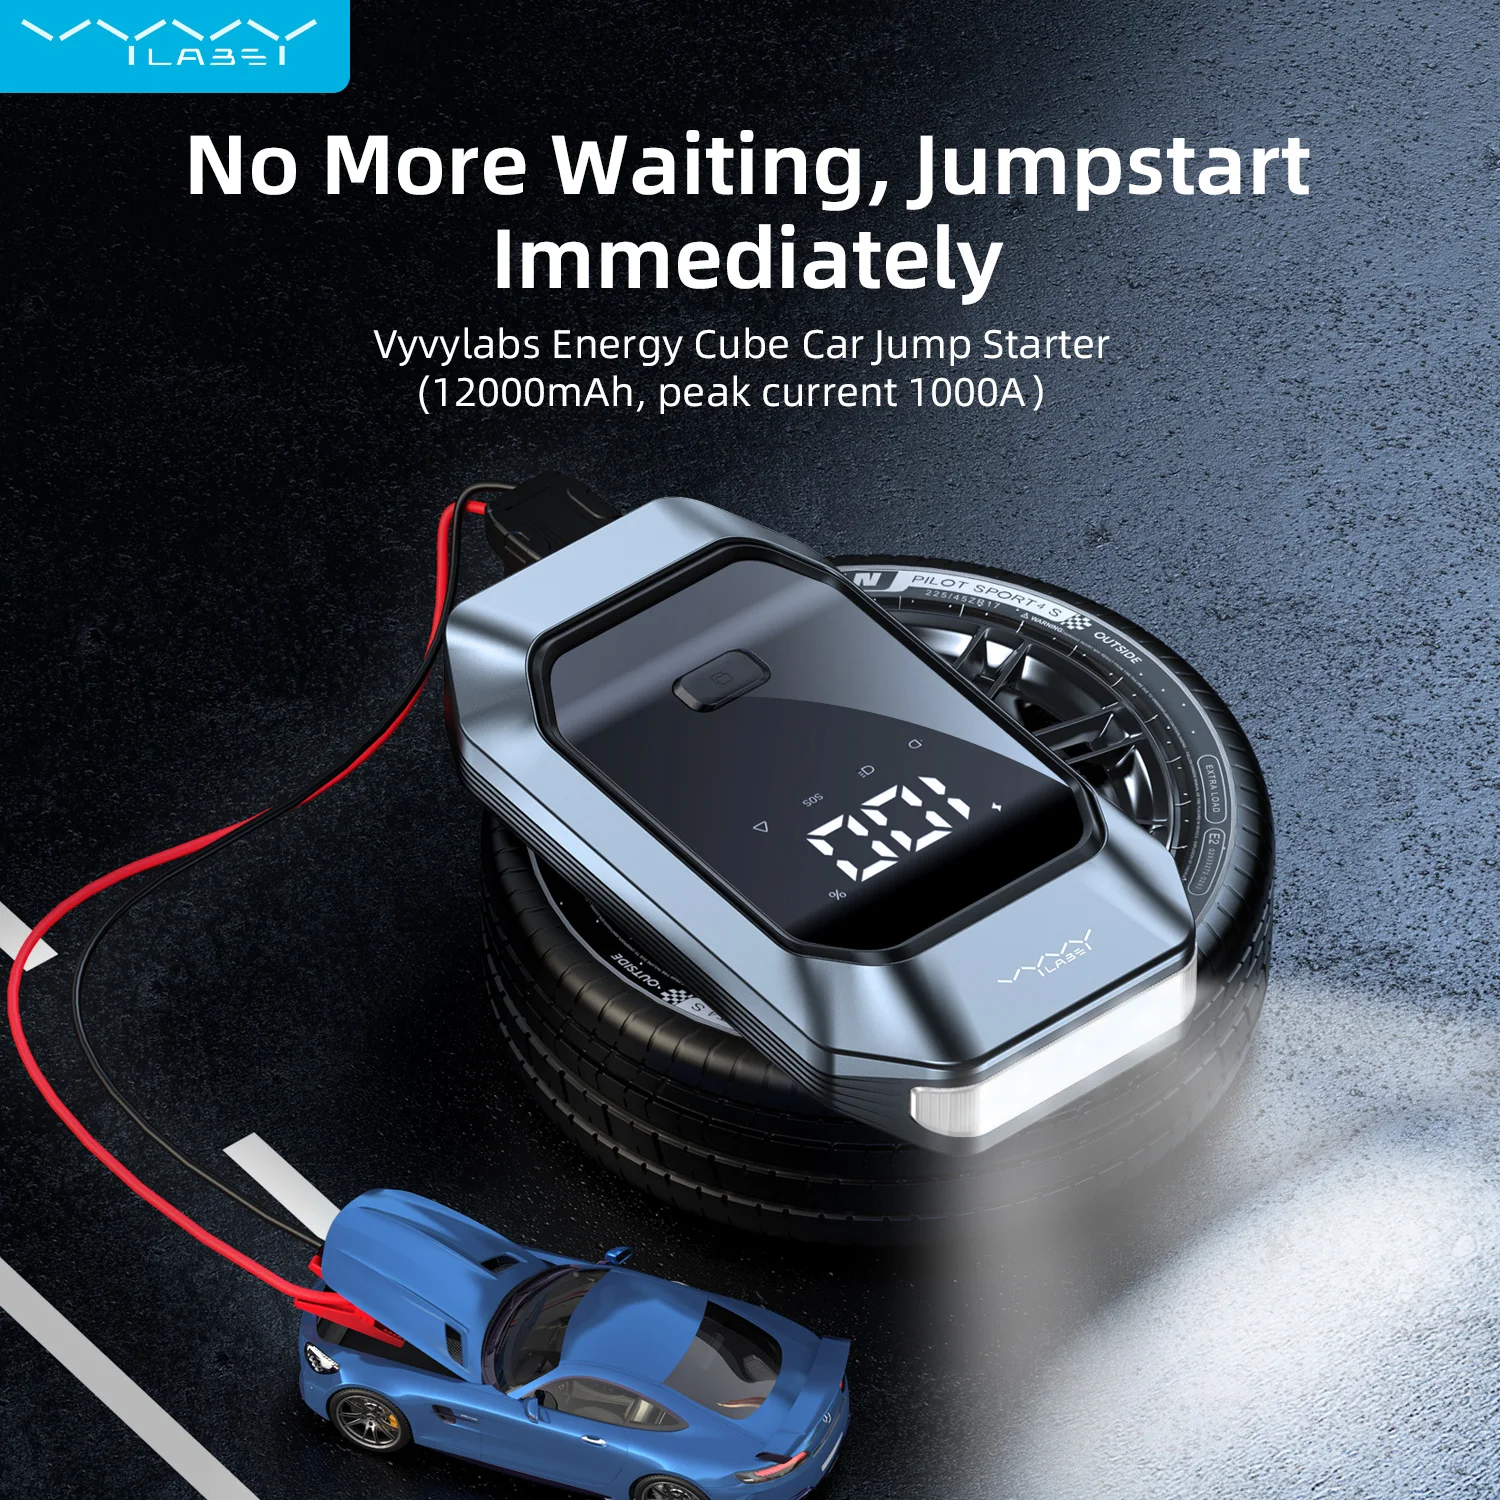 

VyVylabs Car Jump Starter Starting Device 1000A Jumpstarter Auto Buster Emergency Booster 12V Car Jump Start Power Bank 12000mAh